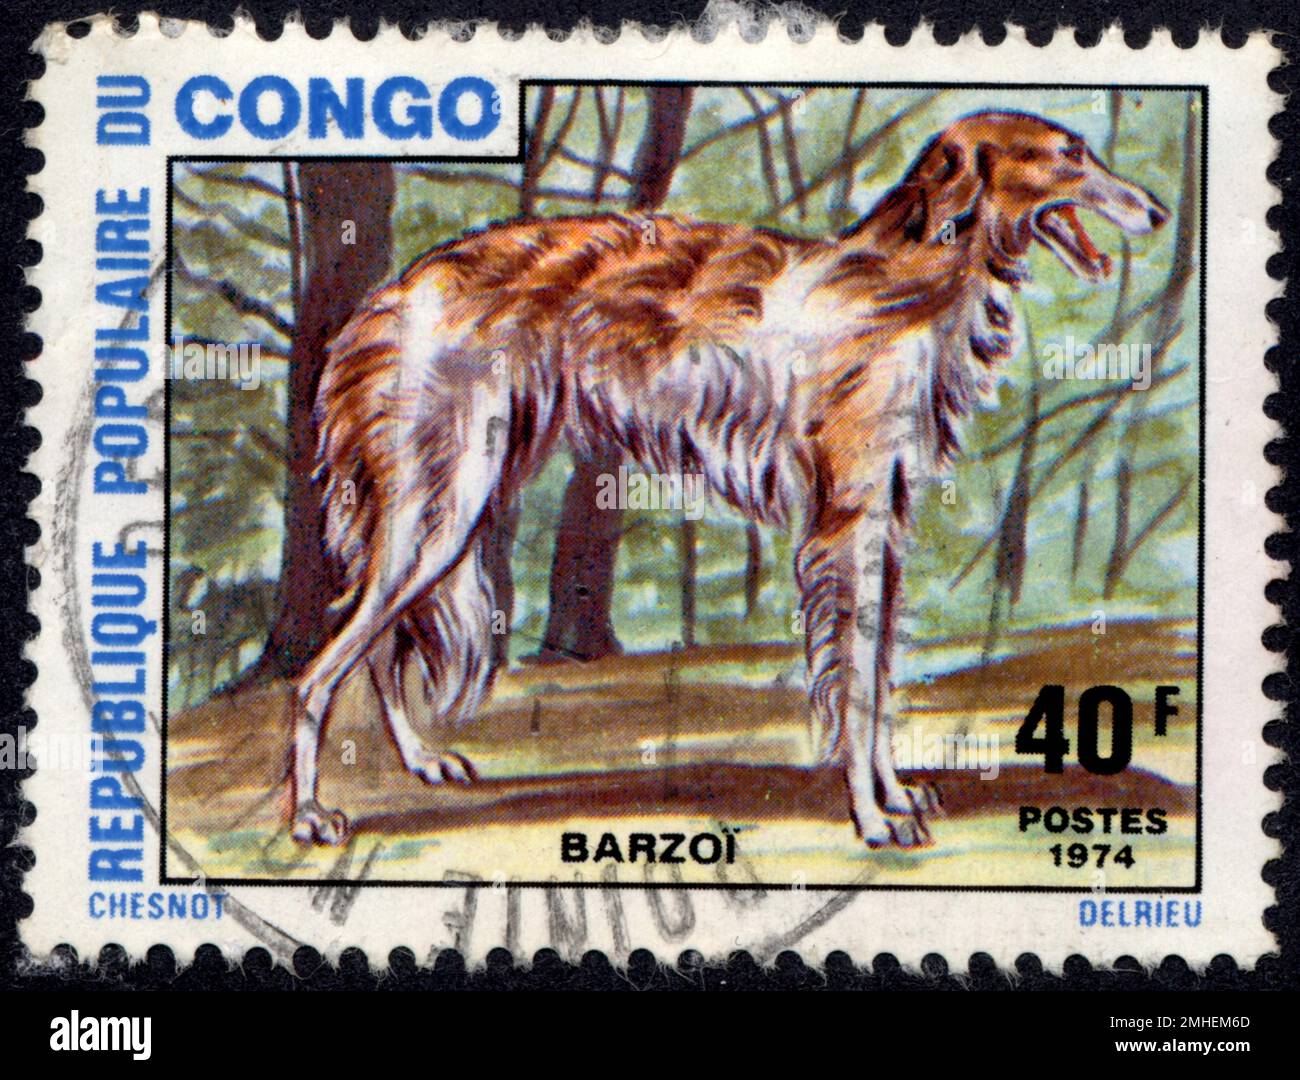 TIMBRE OBLITERES BARZOI. RÉPUBLIQUE POPULAIRE DU CONGO. 40 F. POSTES. 1974 Stockfoto